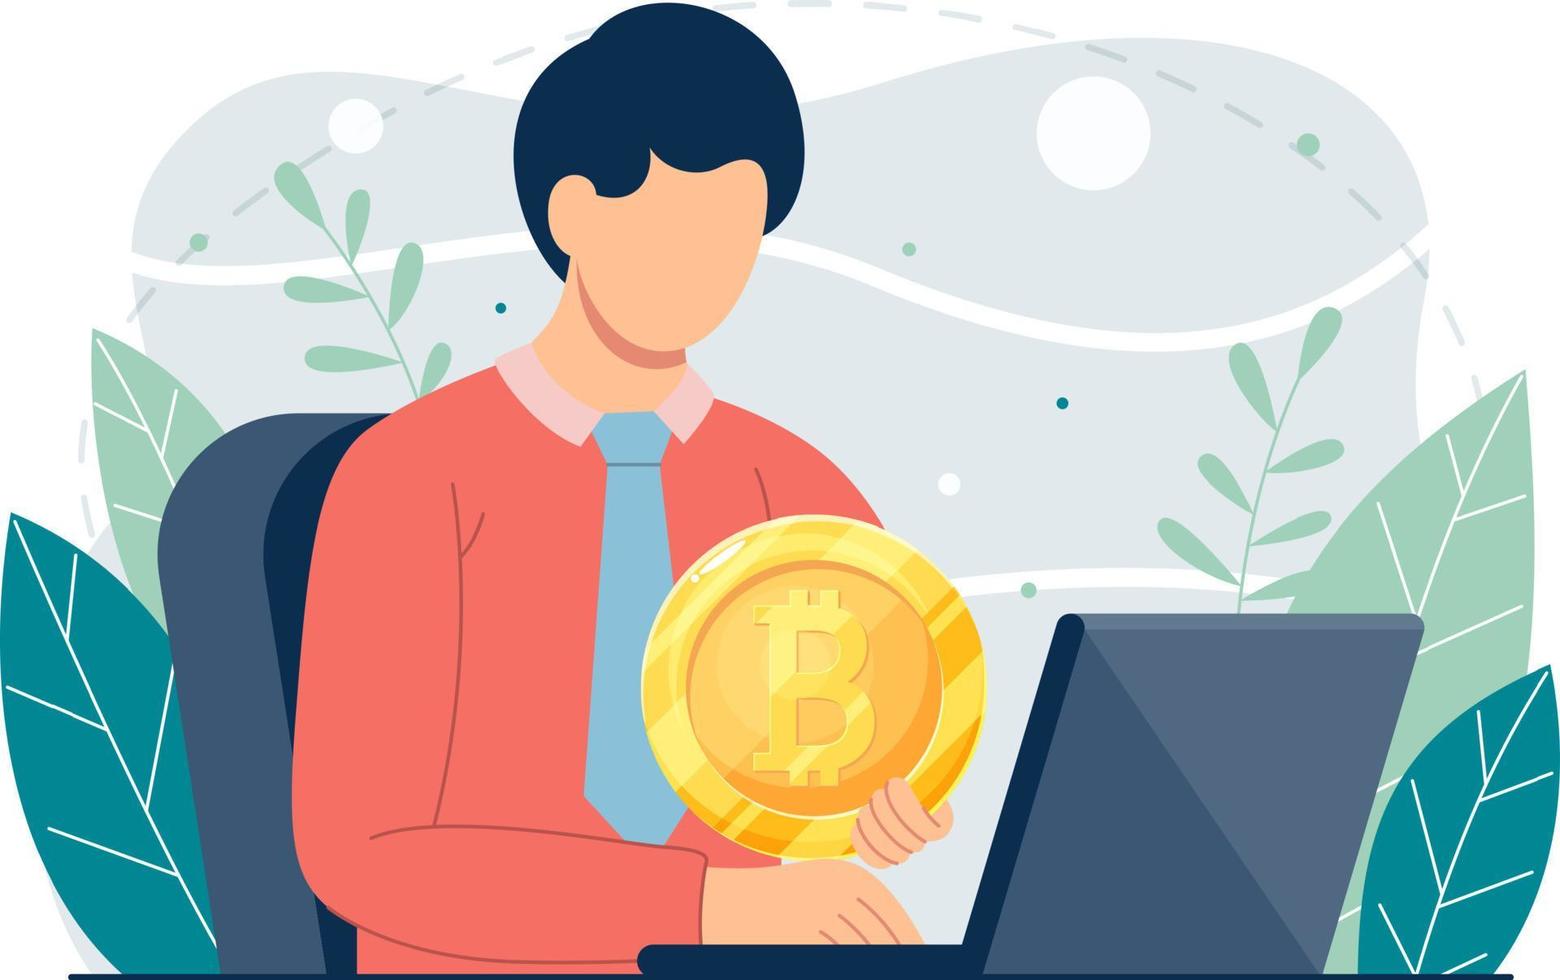 Kryptowährung und Blockchain-Technologie digitale Geldanlage und Bitcoin-Handel-Konzept Illustrationen vektor